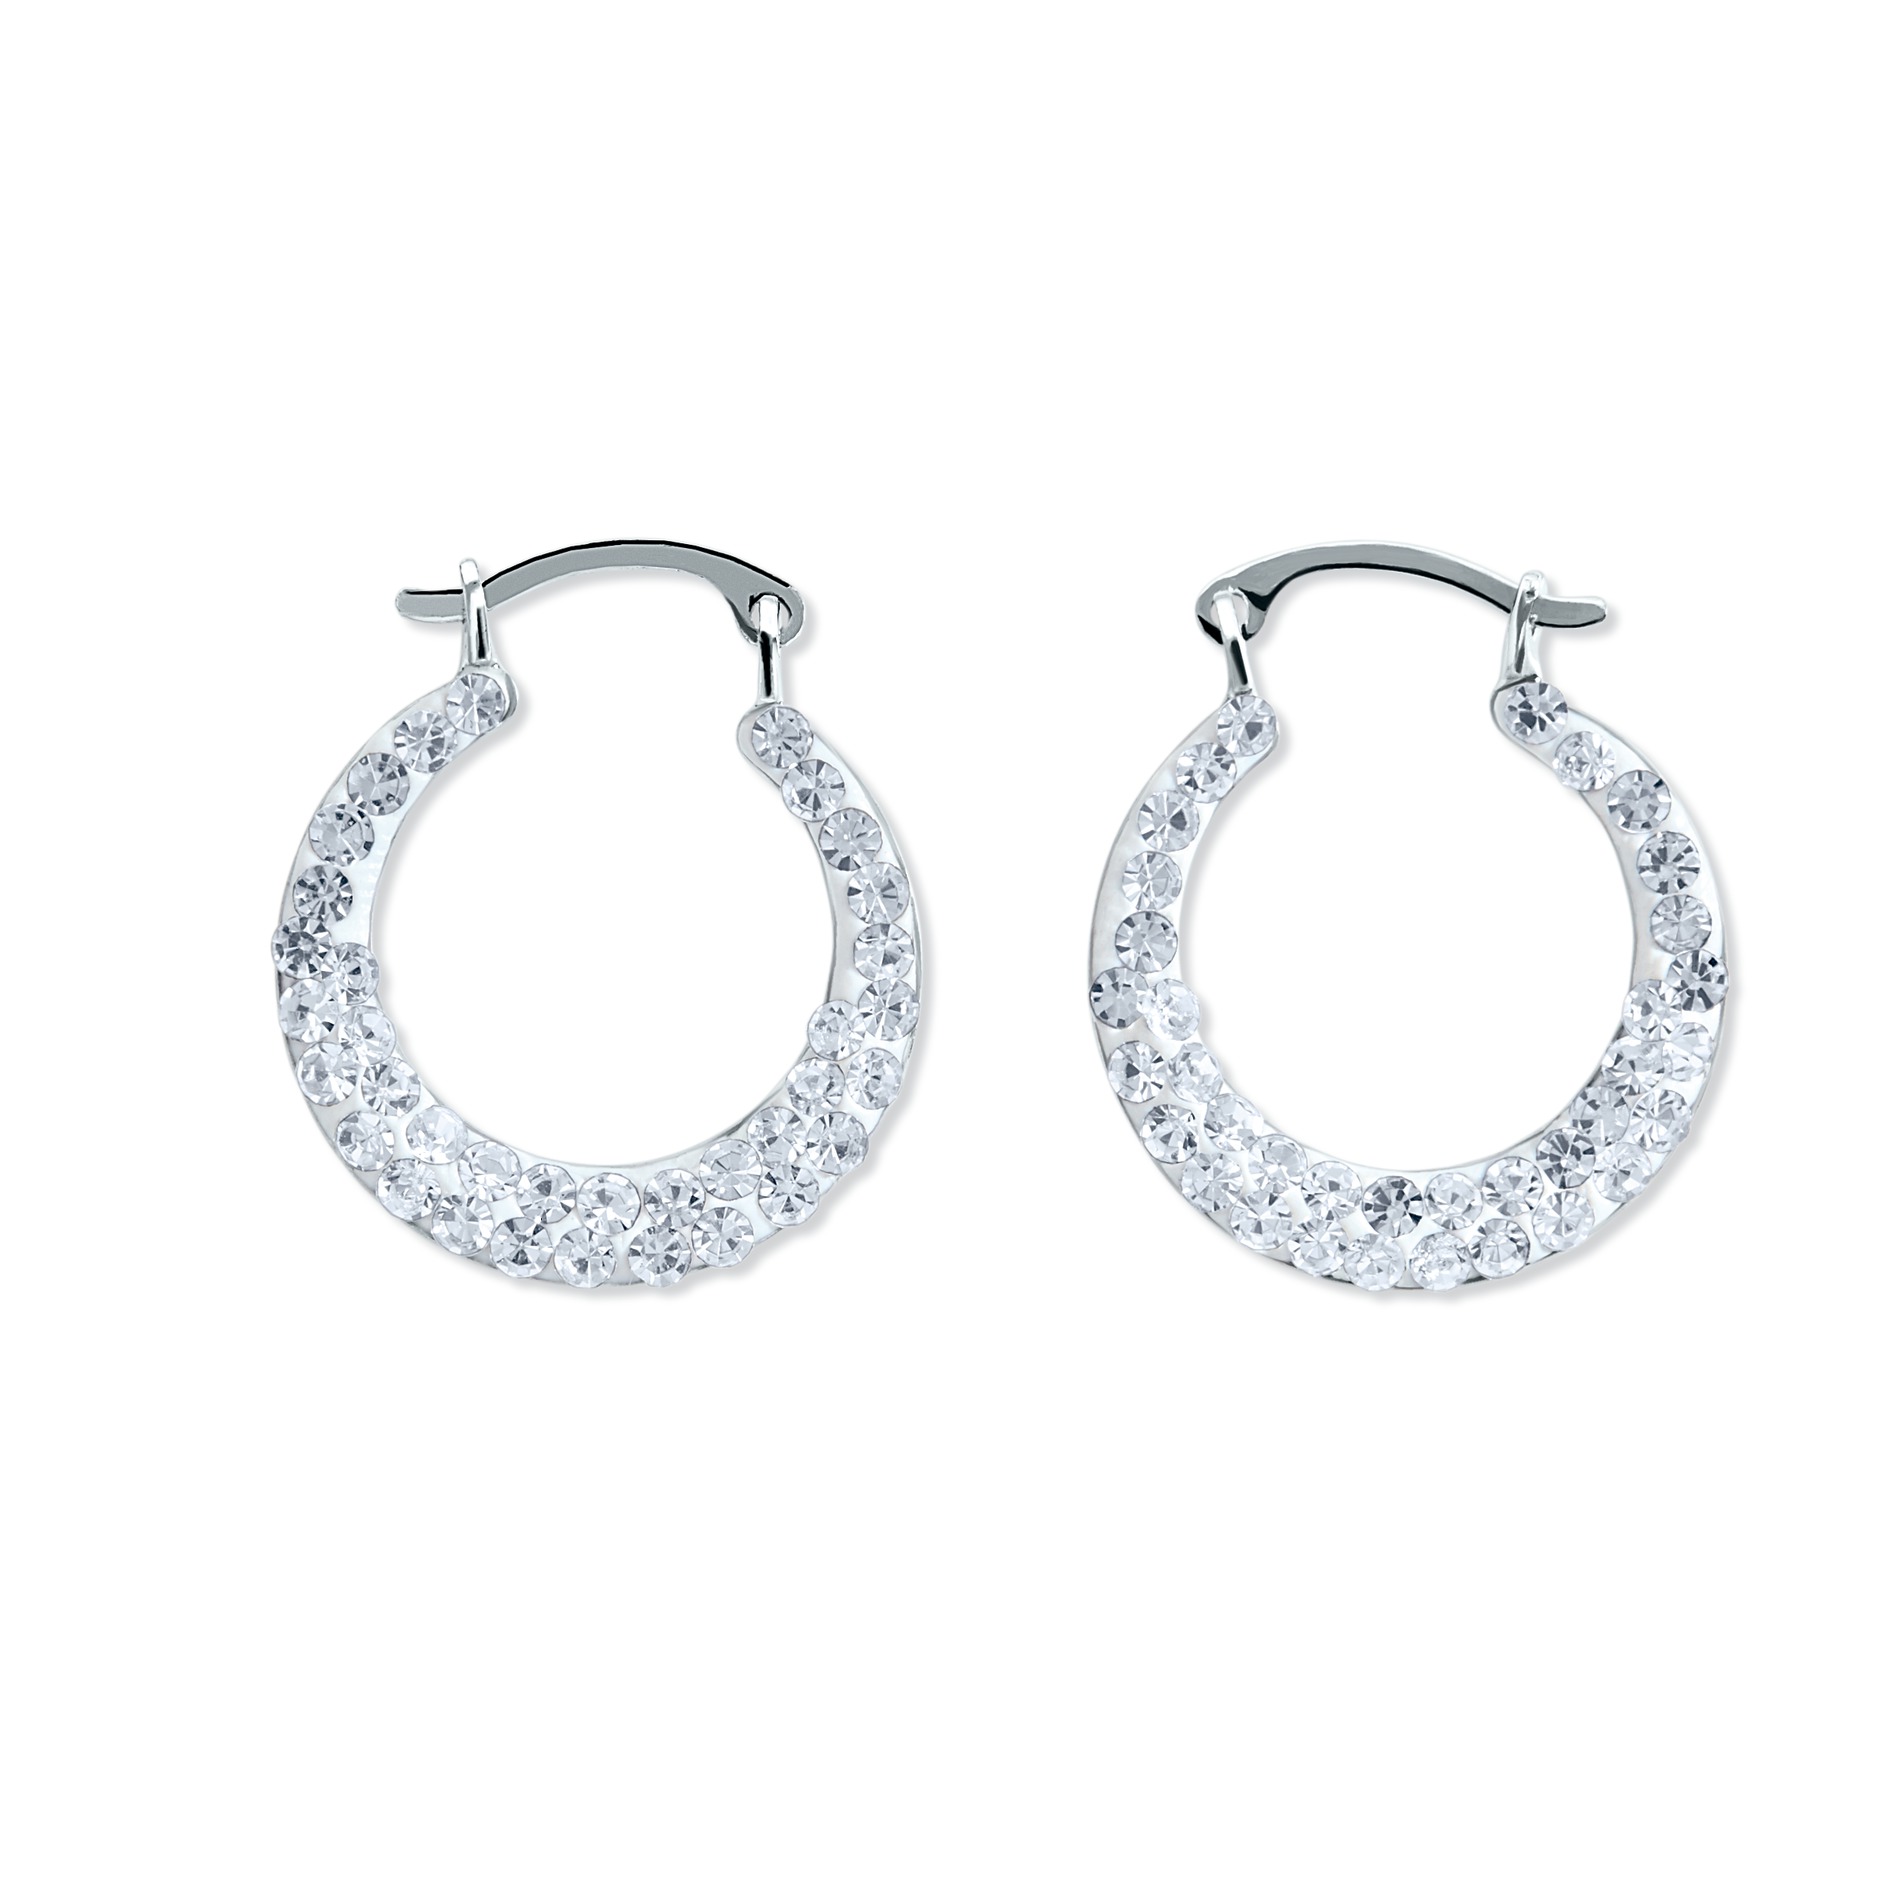 Sterling Silver Crystal Hoop Earrings Down to $7.99! (Reg $49.99)